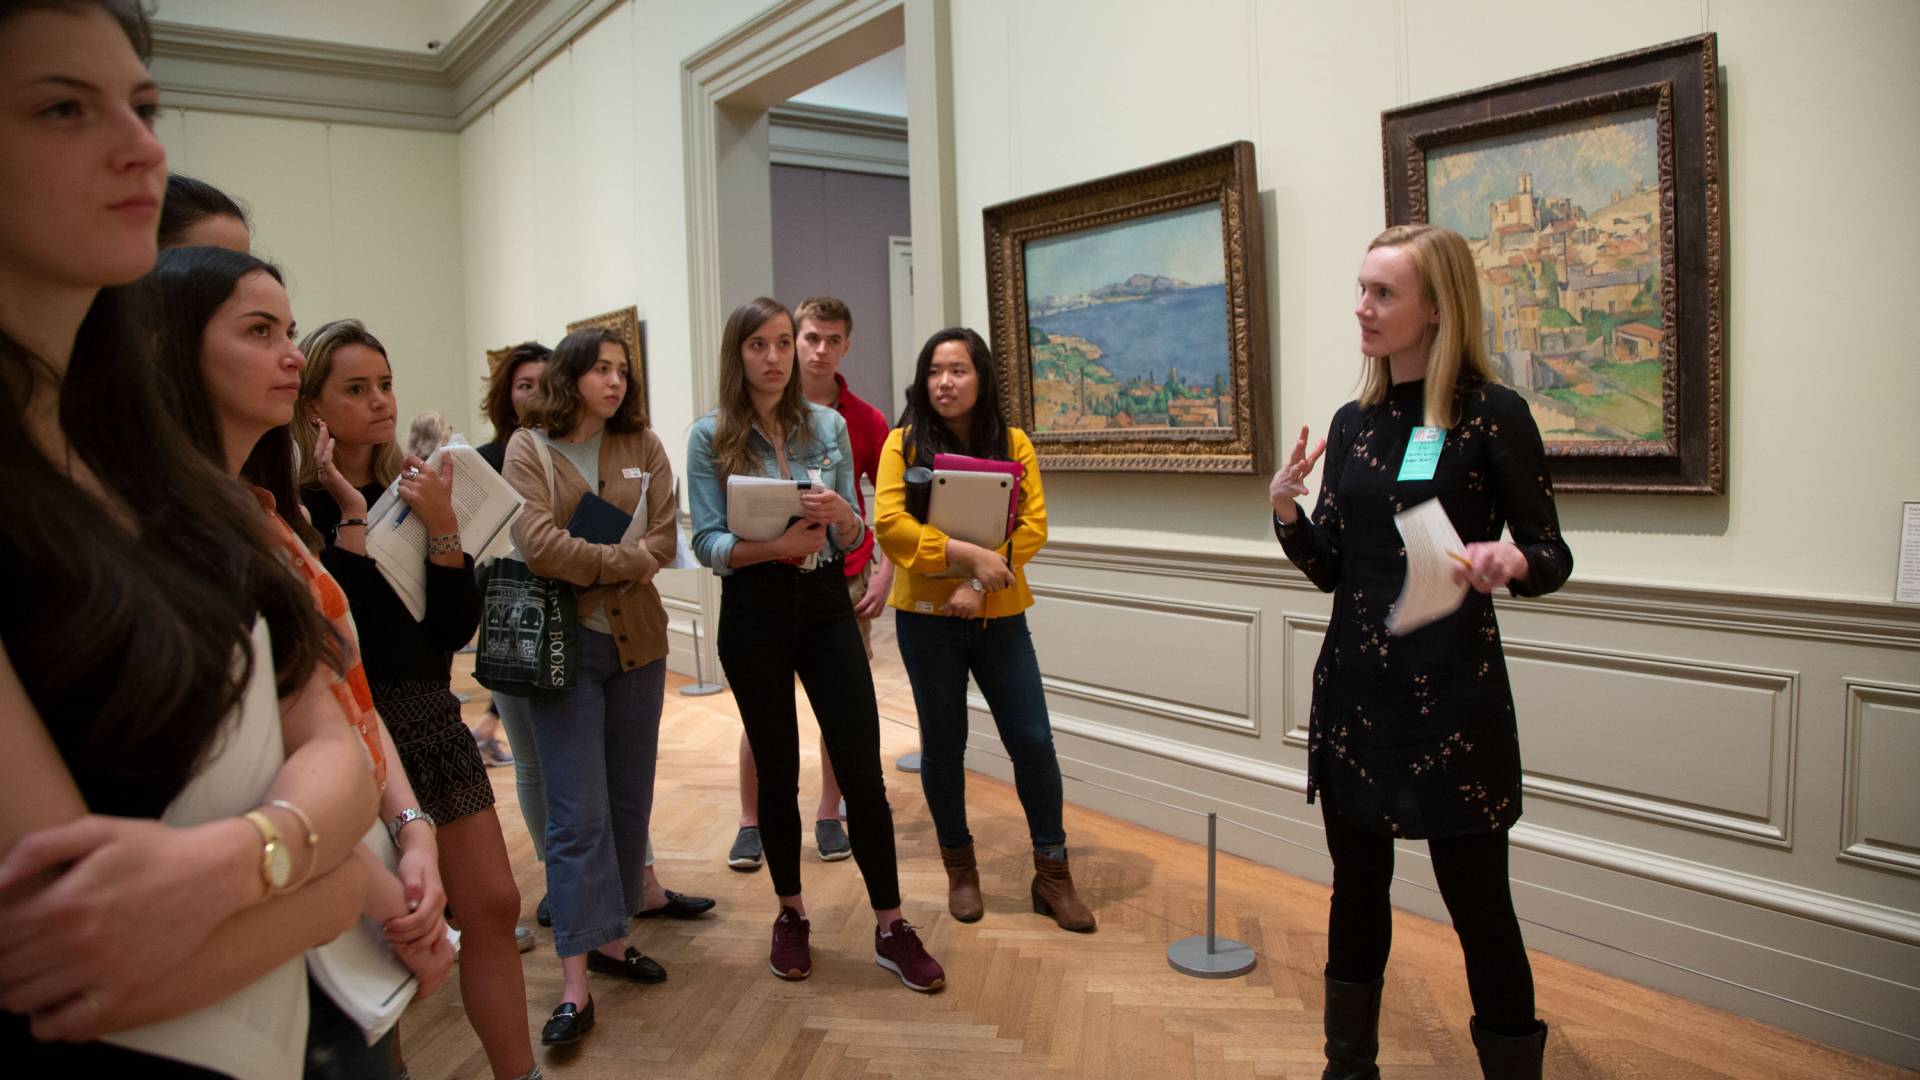 Bridget Alsdorf speaking with students in front of art